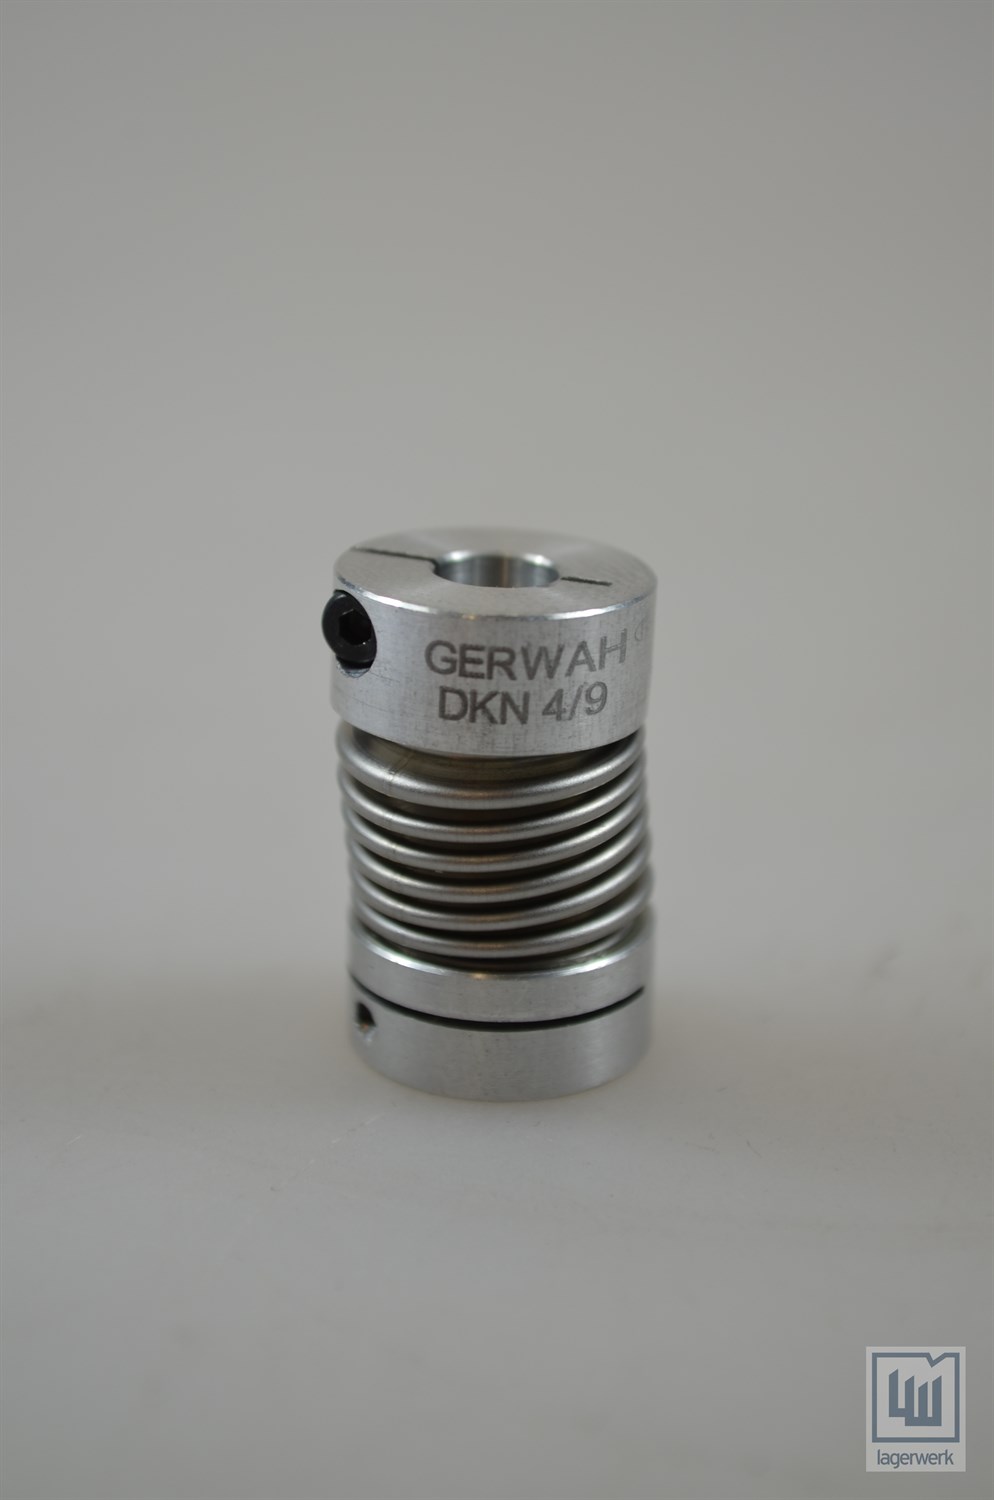 Gerwah-DKN 4-gioco libera metallo SOFFIETTO FRIZIONE; d1 = 5mm e d2 = 5mm; onde FRIZIONE 